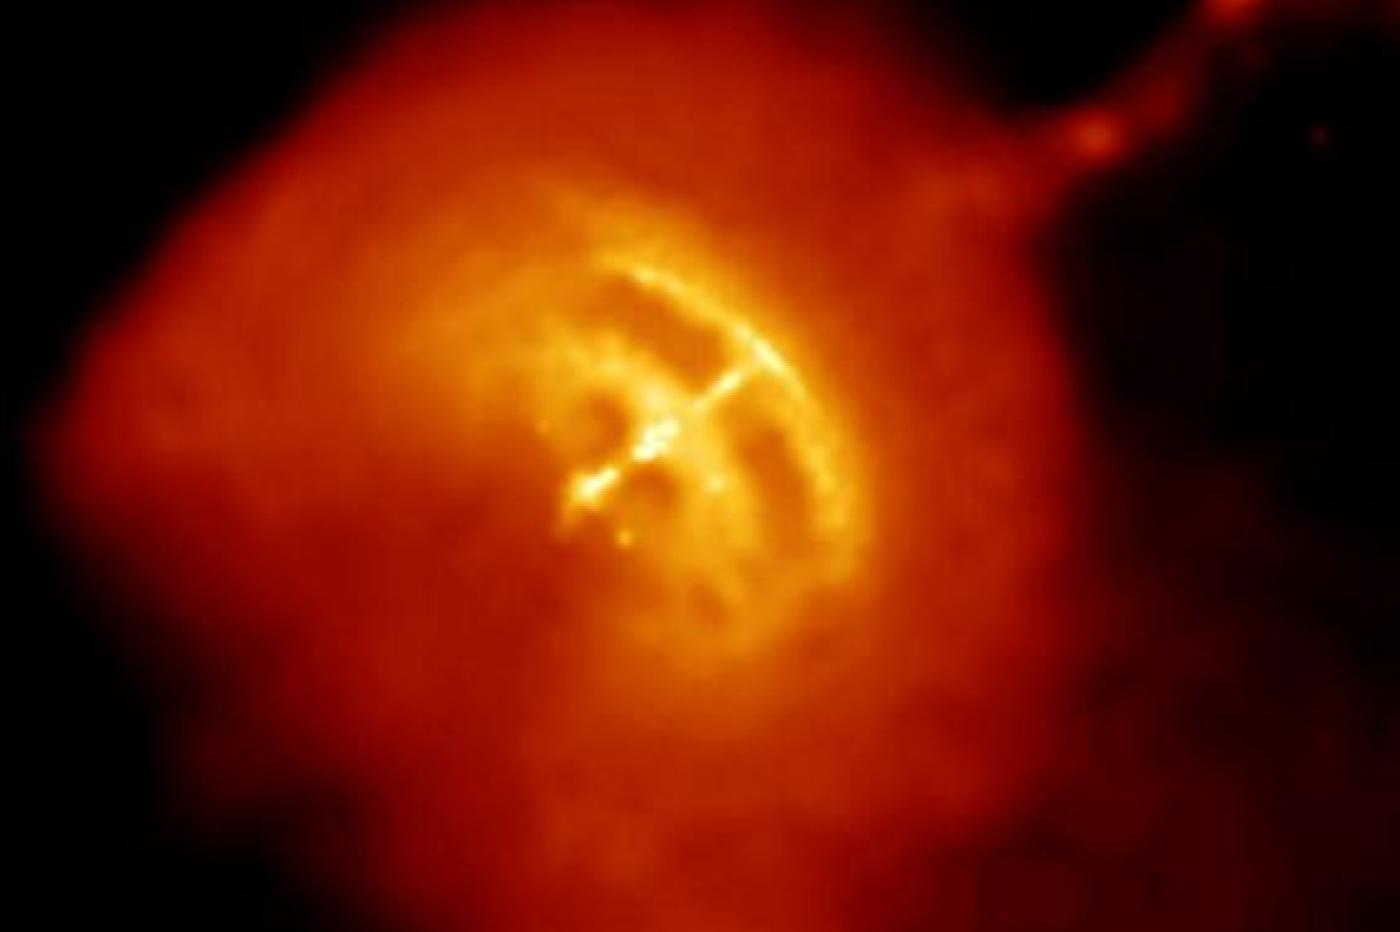 Le pulsar de Vela vu par le télescope Chandra